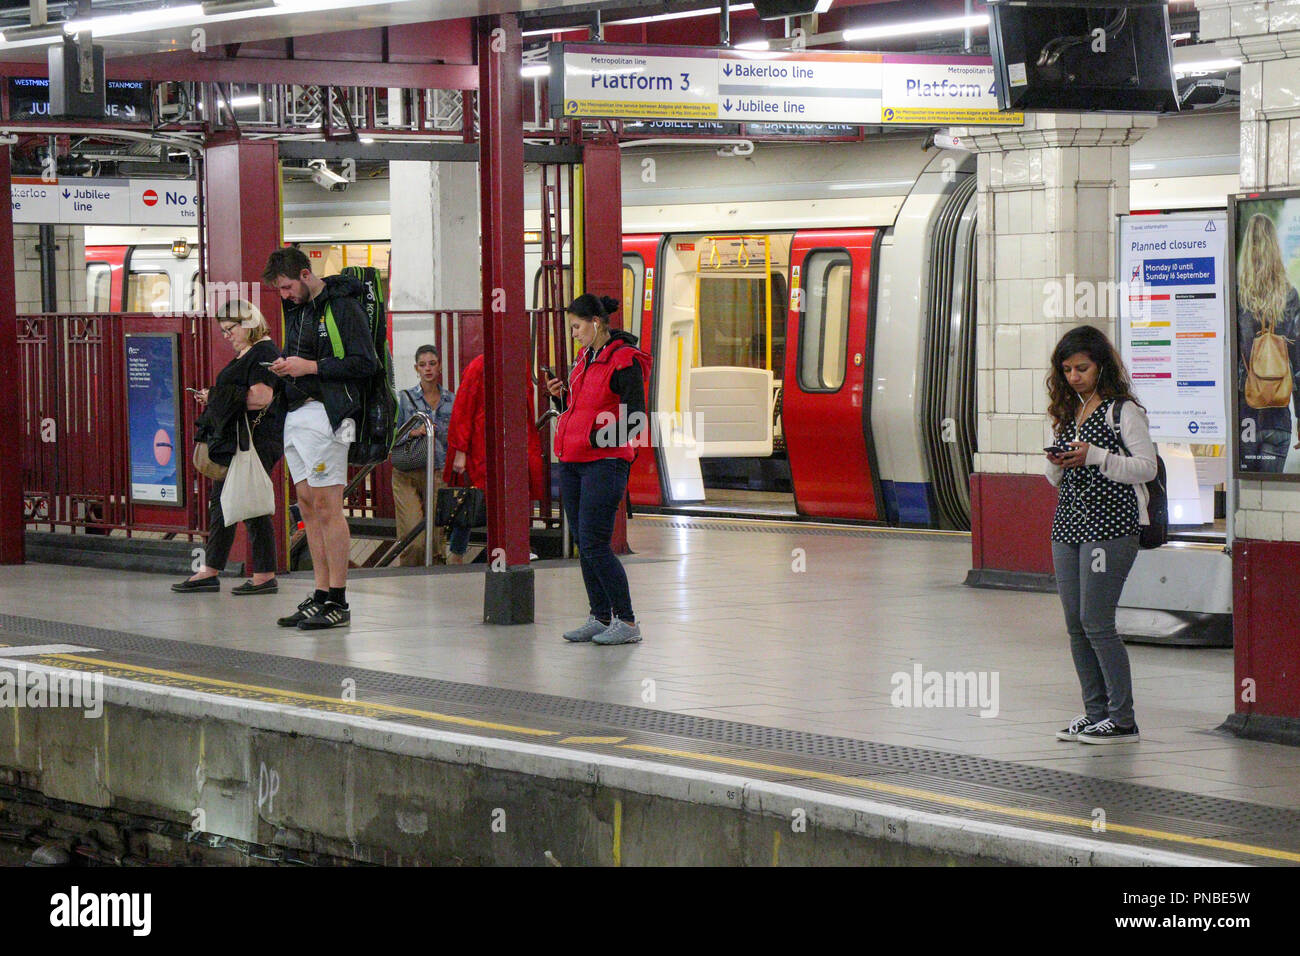 passengers waiting for train, London Underground, England, UK Stock Photo